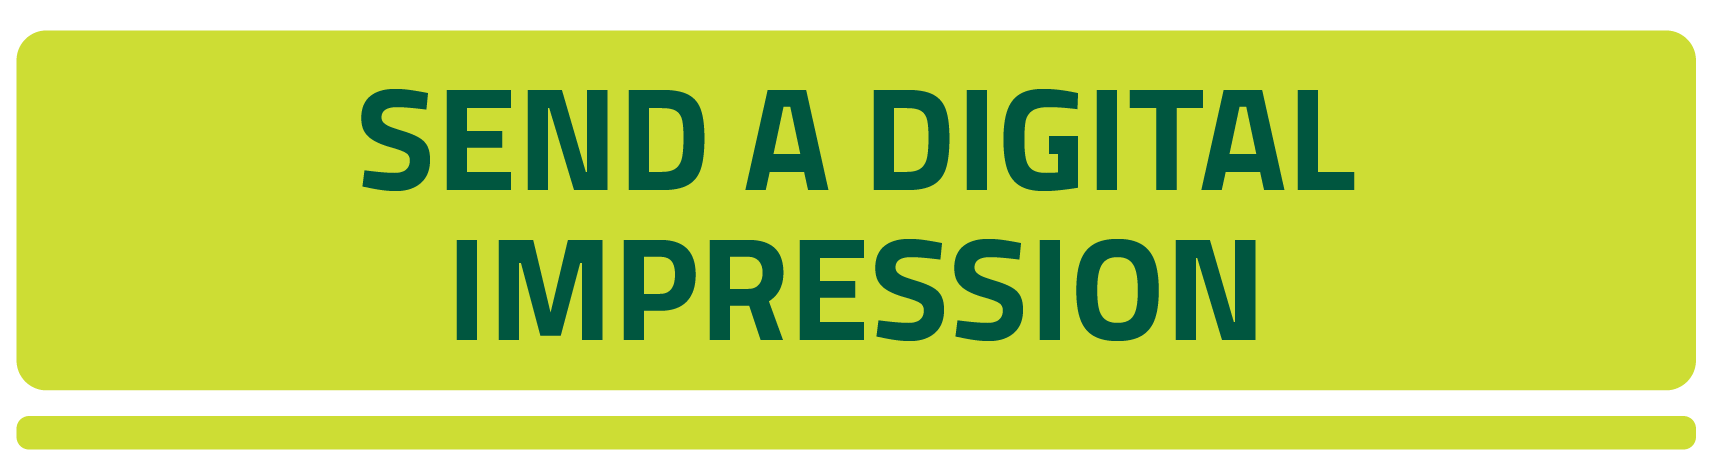 Send a Digital Impression